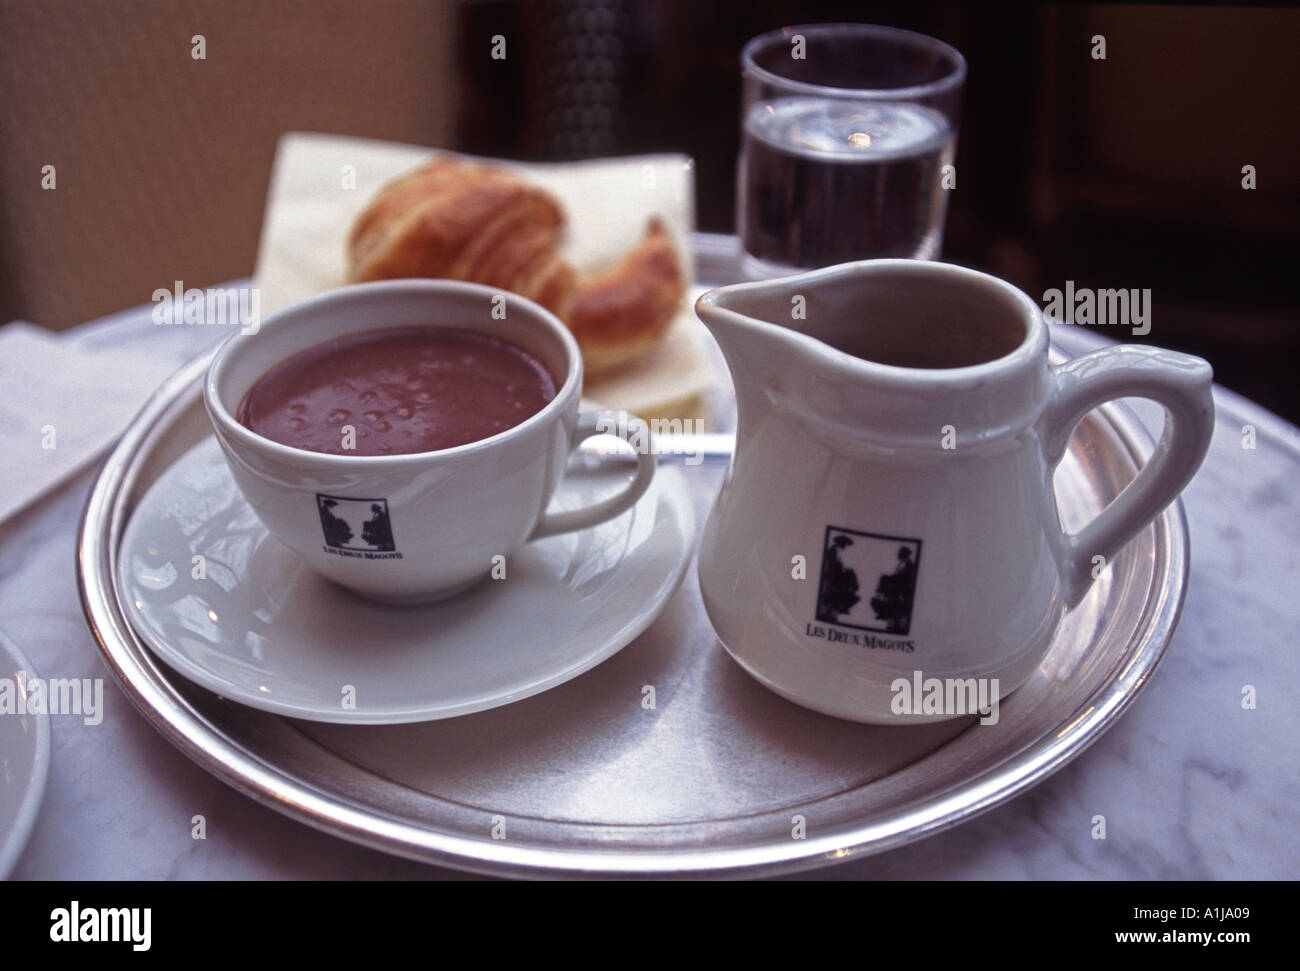 Hot Chocolate and Croissant Cafe Les Deux Magots St Germain Paris France Stock Photo